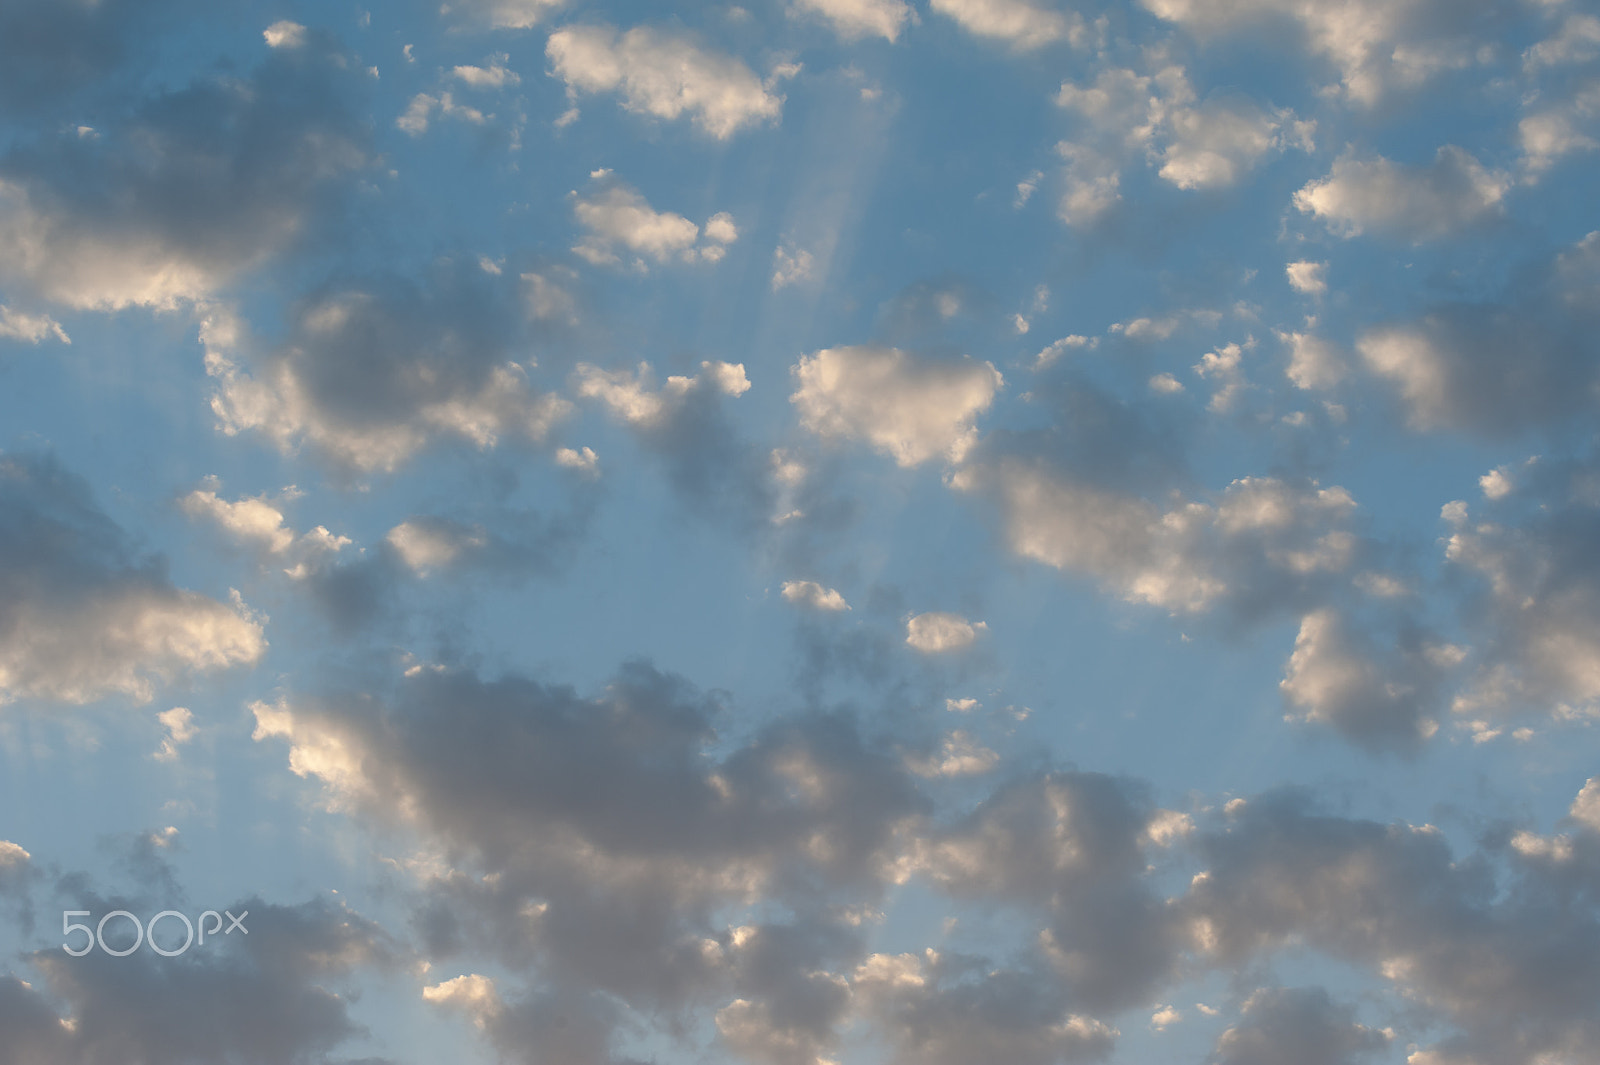 Nikon D700 sample photo. Clouds at sunset photography